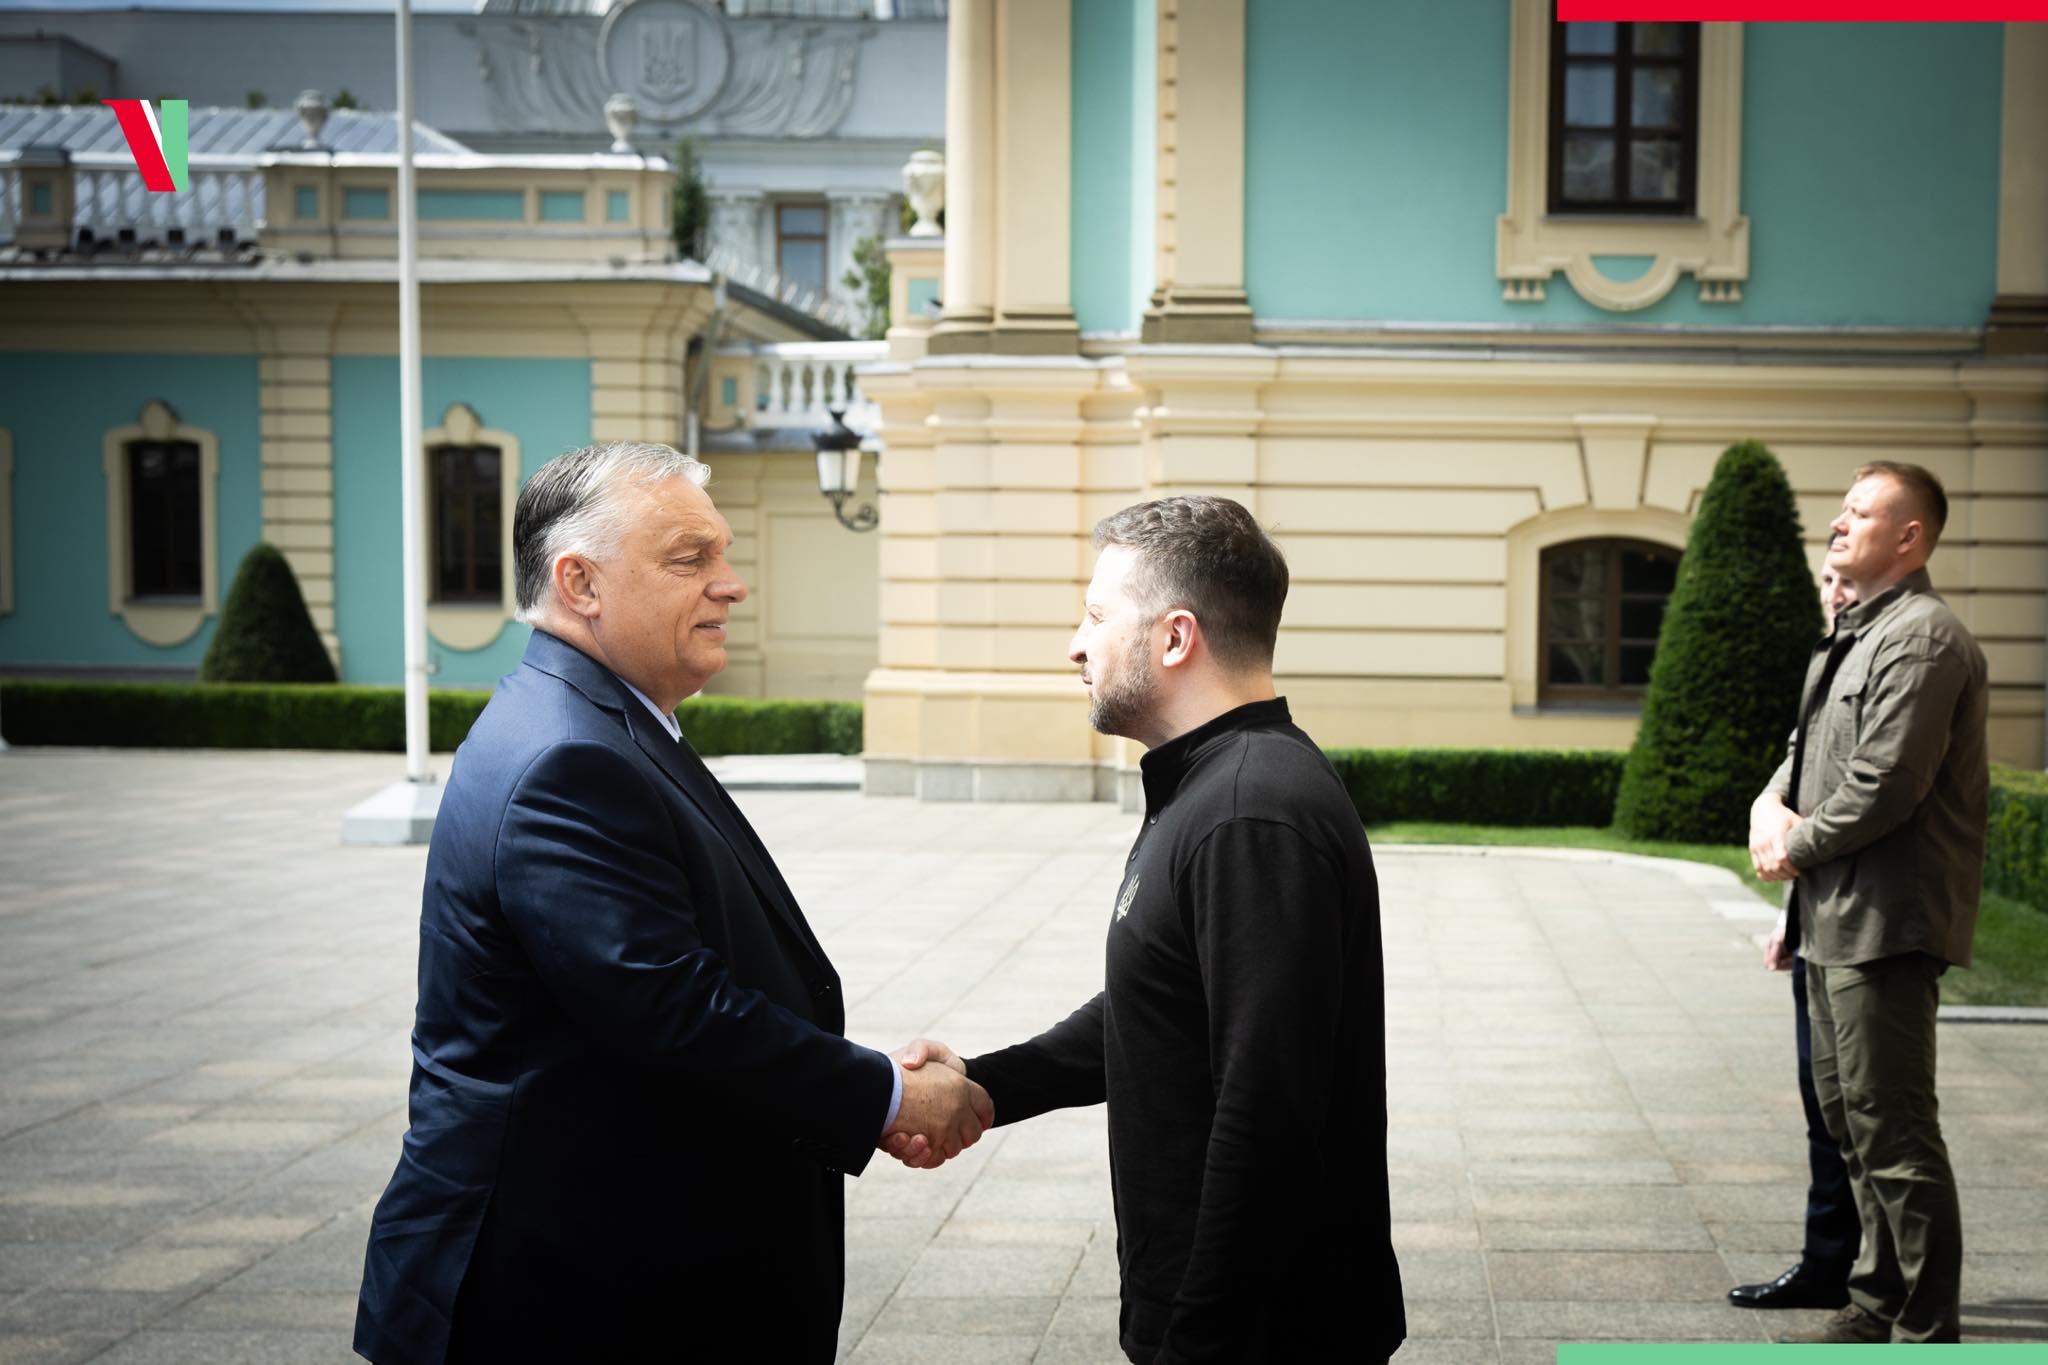 Zelensky Orbán Kyiv